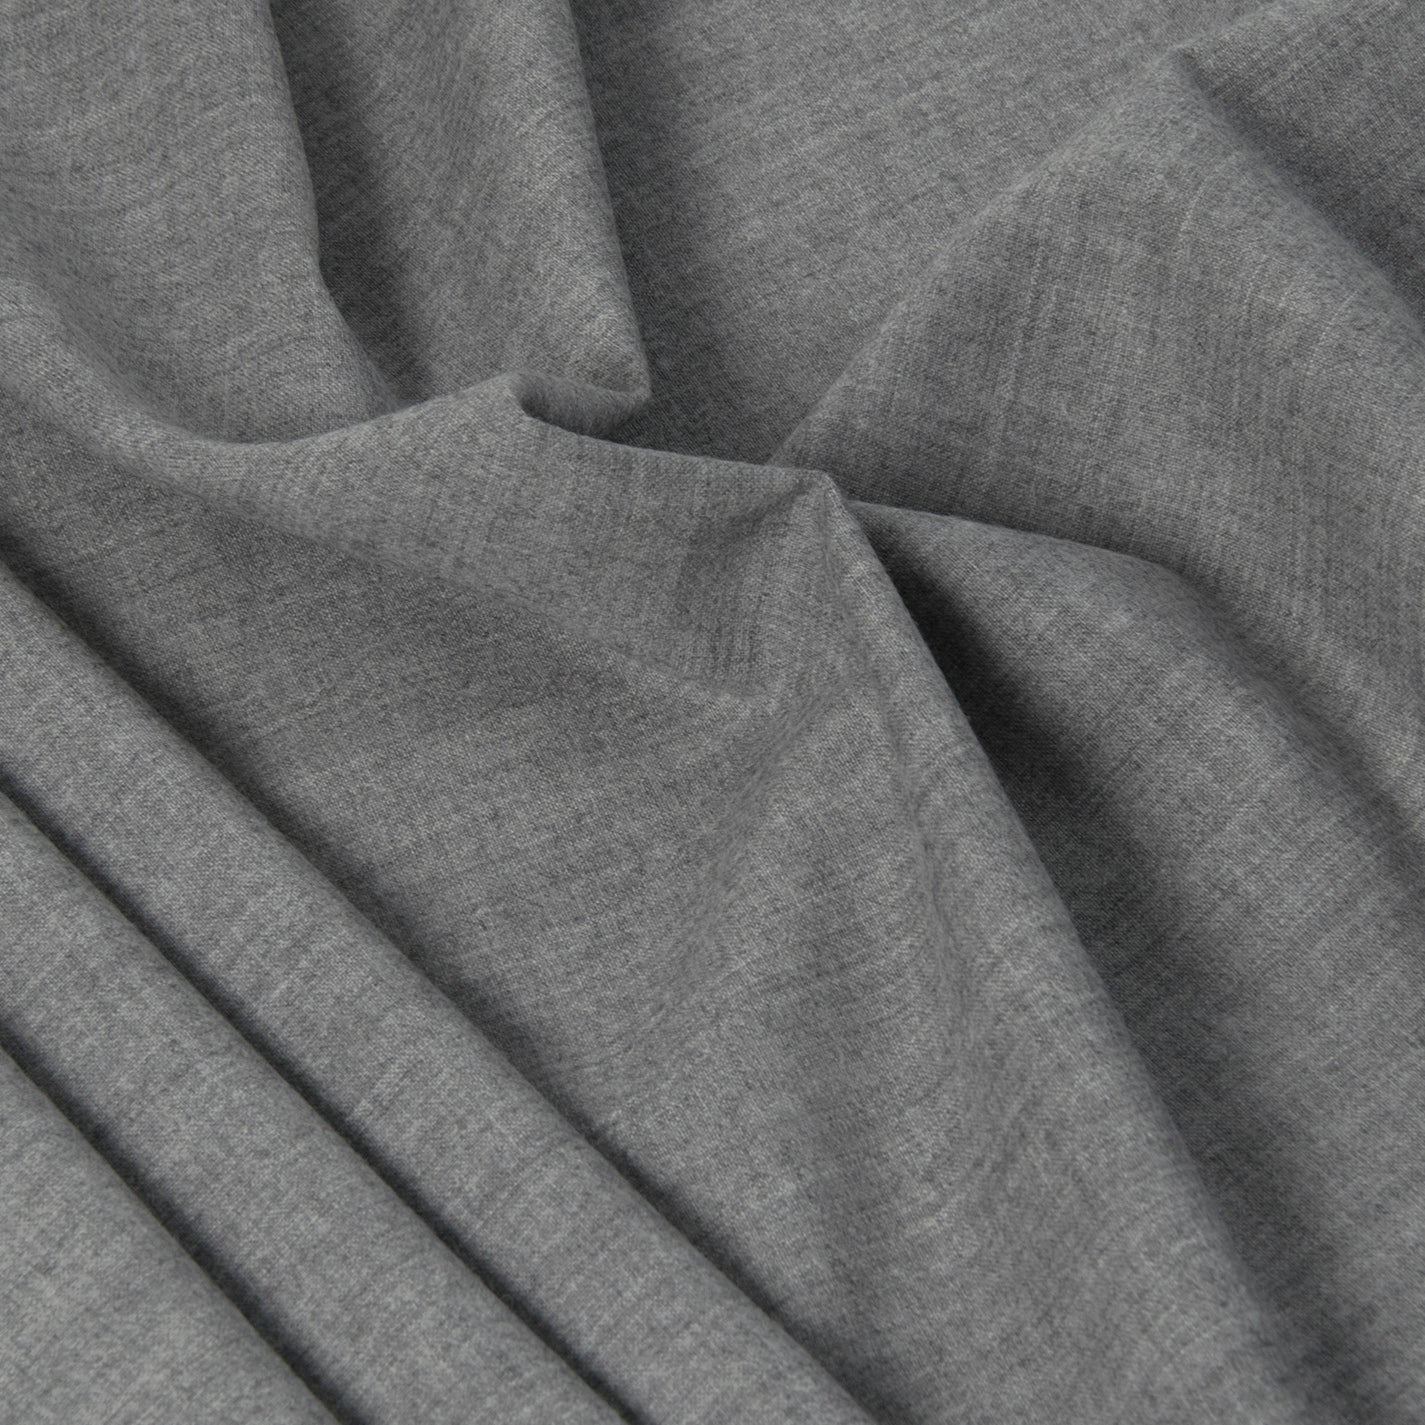 Stretch Suiting Grey Fabric 321 - Fabrics4Fashion